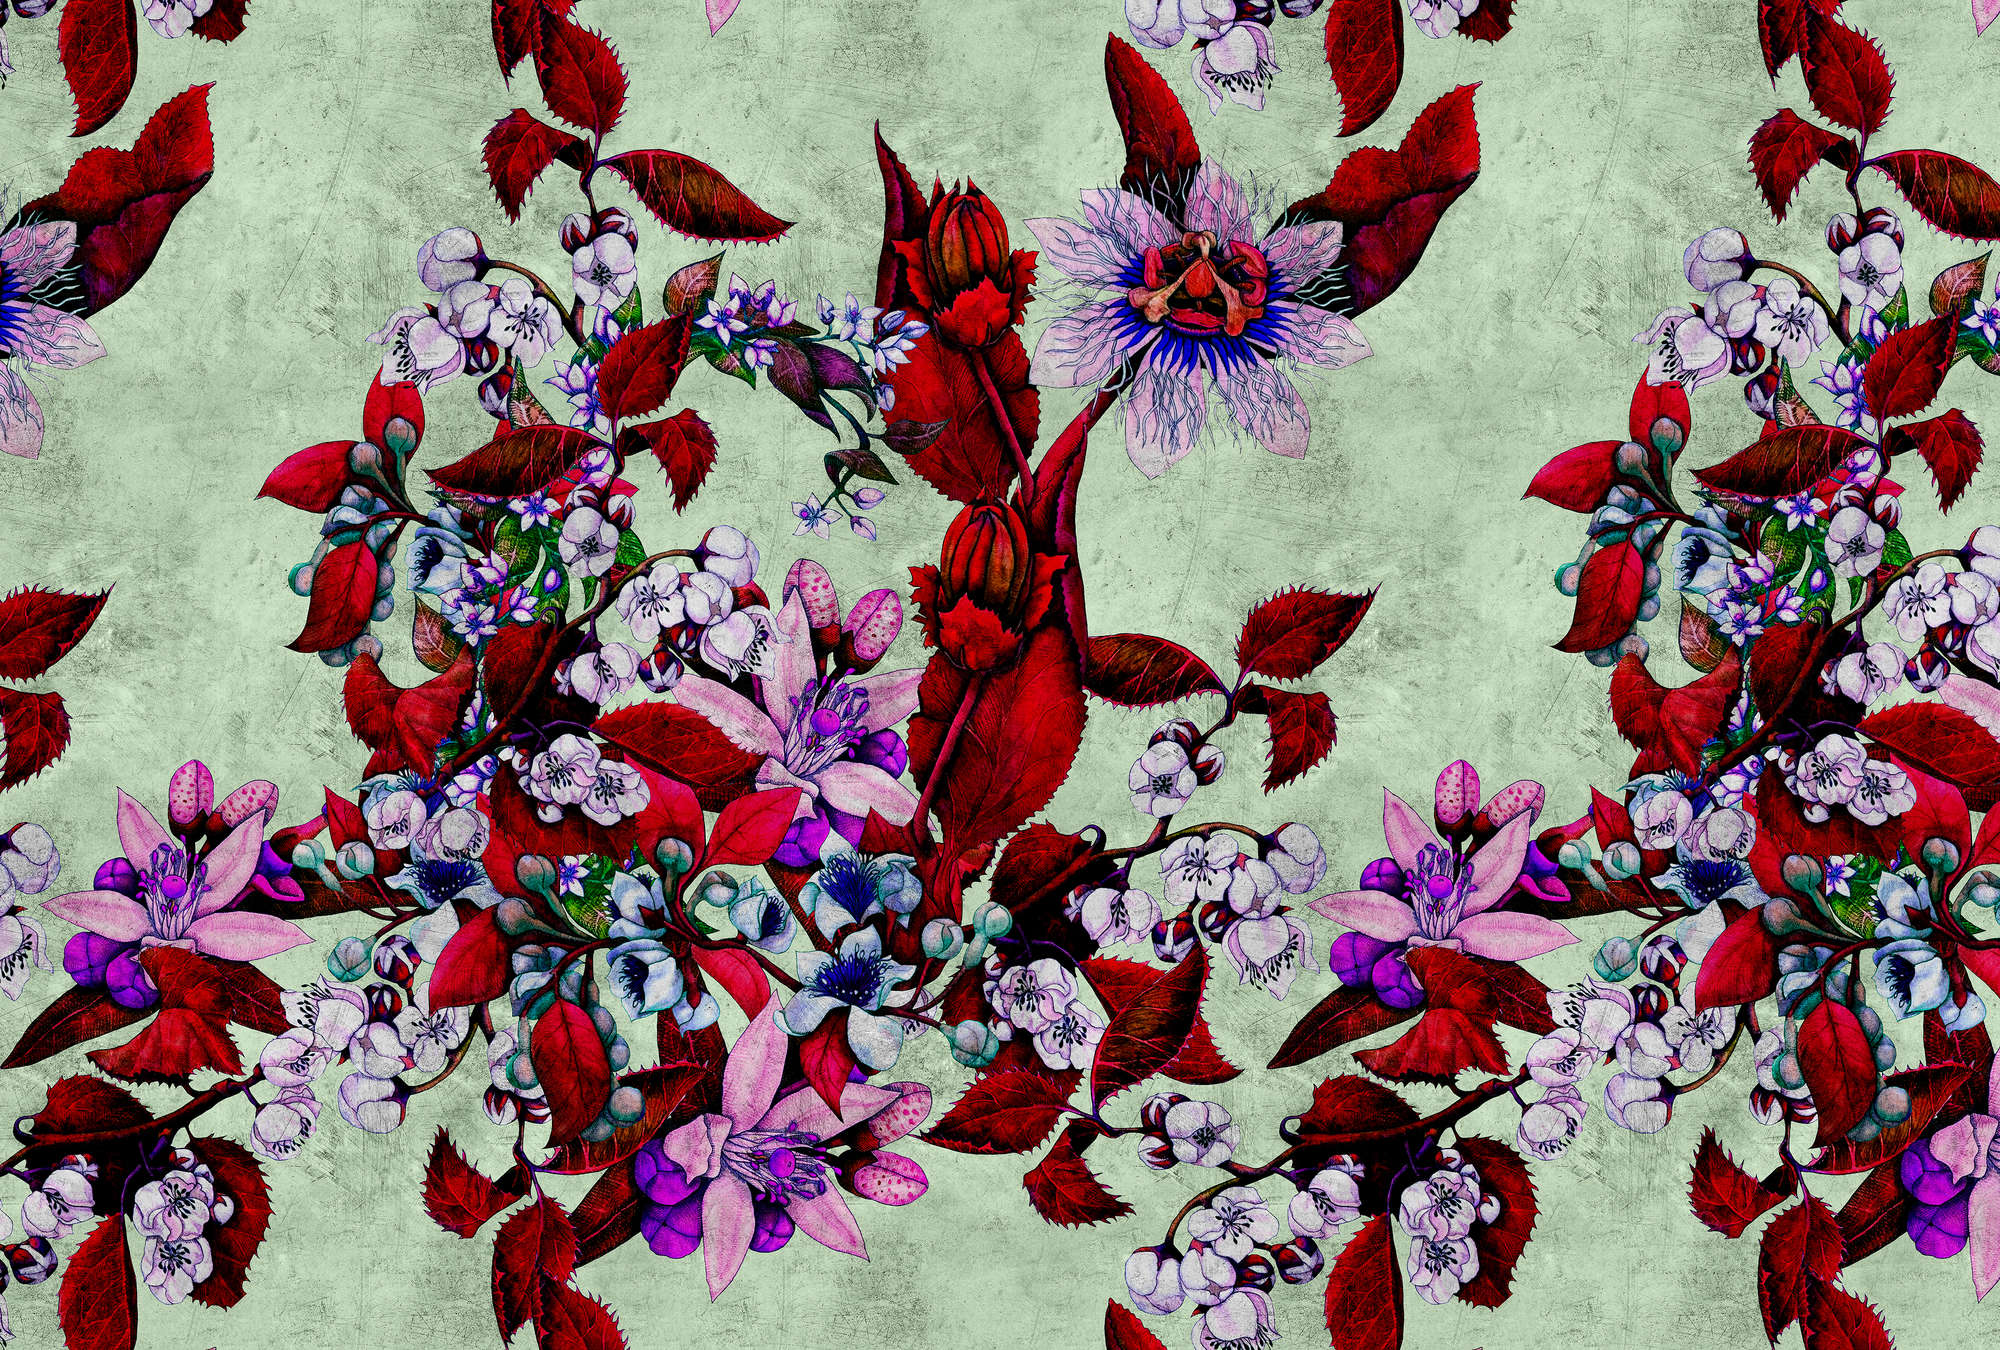             Tropical Passion 3 - Papier peint avec motif floral ludique - structure grattée - vert, rouge | Premium intissé lisse
        